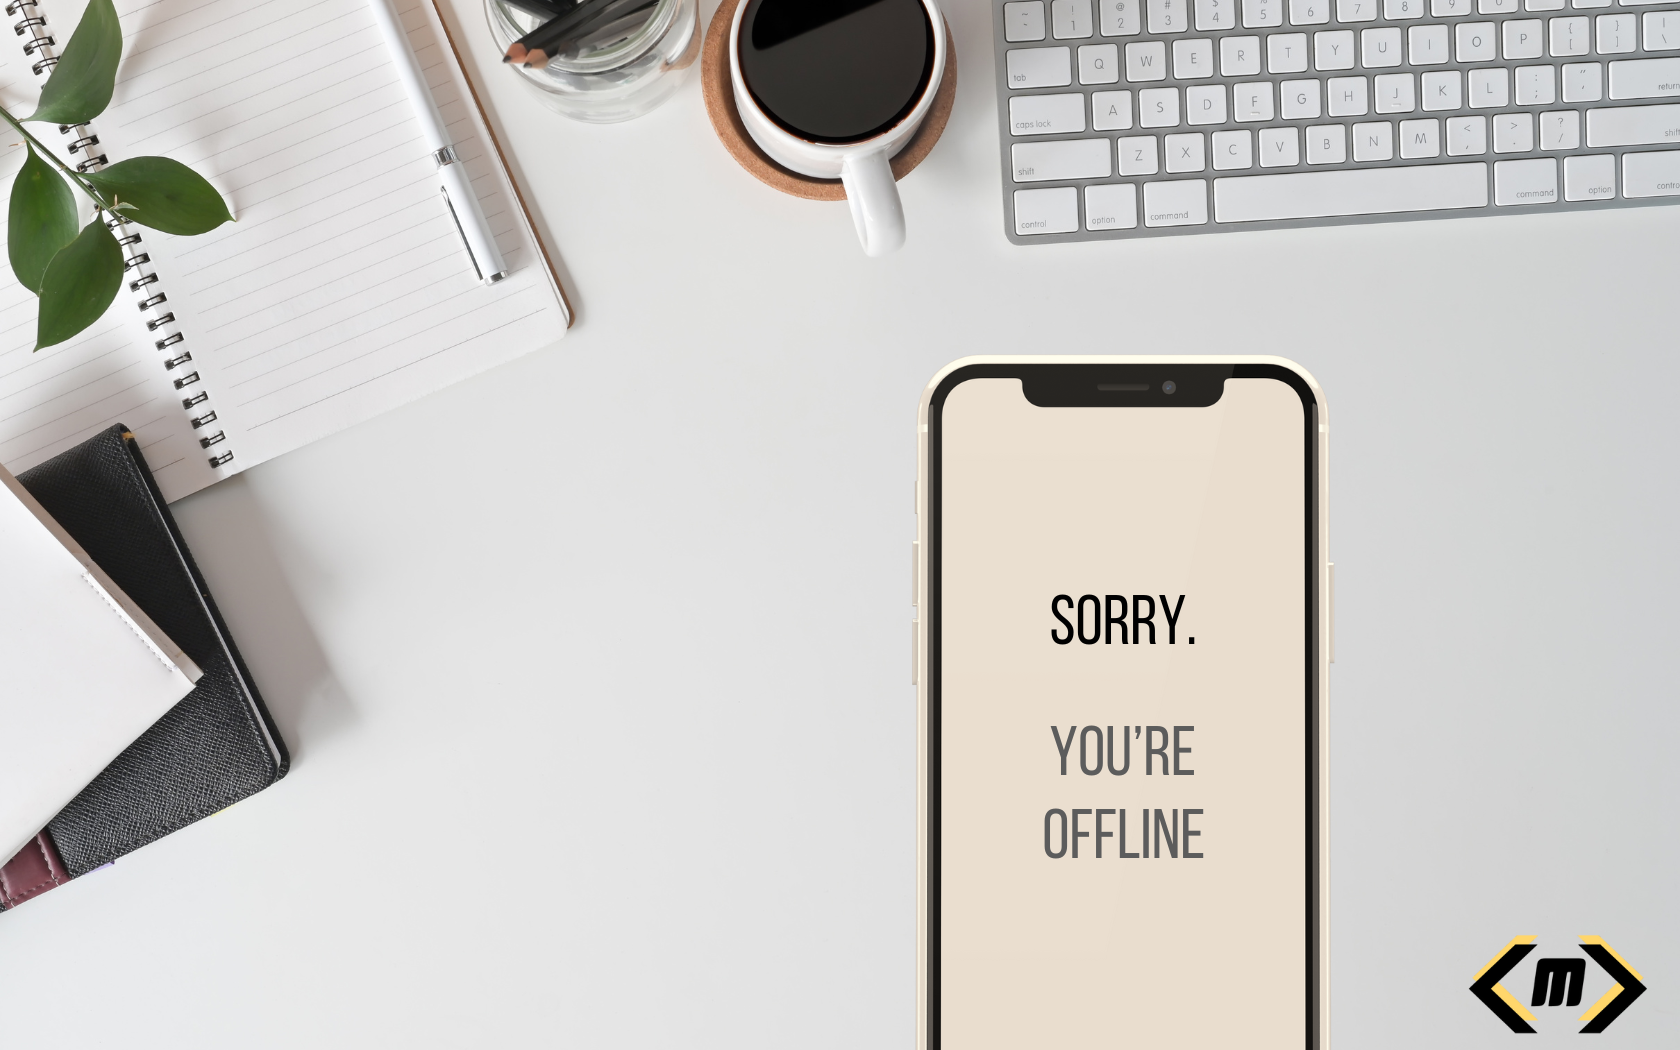 Sorry. You’re offline. 